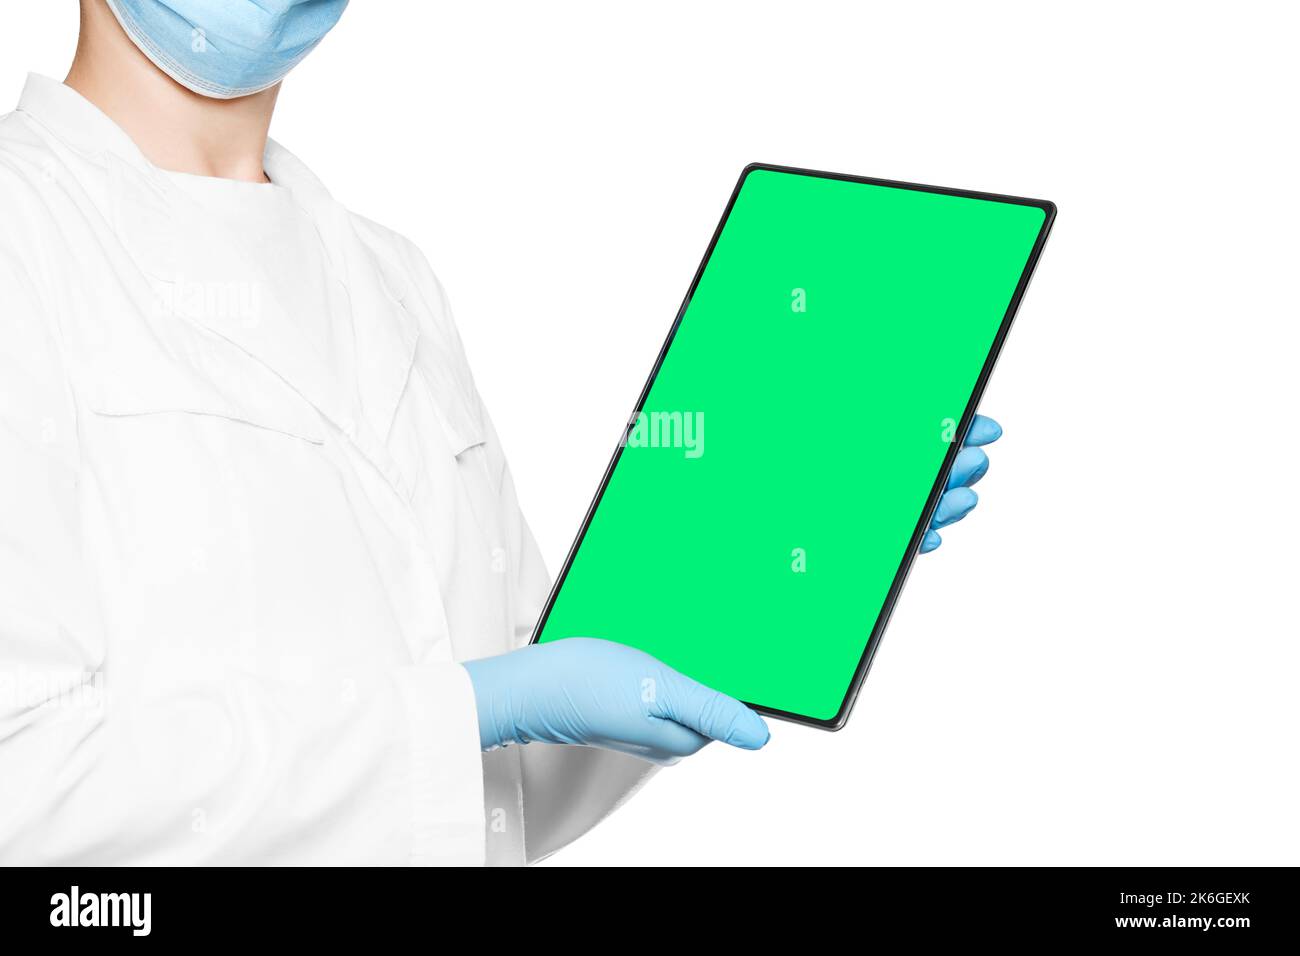 Il medico sta tenendo una tavoletta elettronica con uno spazio vuoto nelle mani, con uno schermo verde. Foto Stock